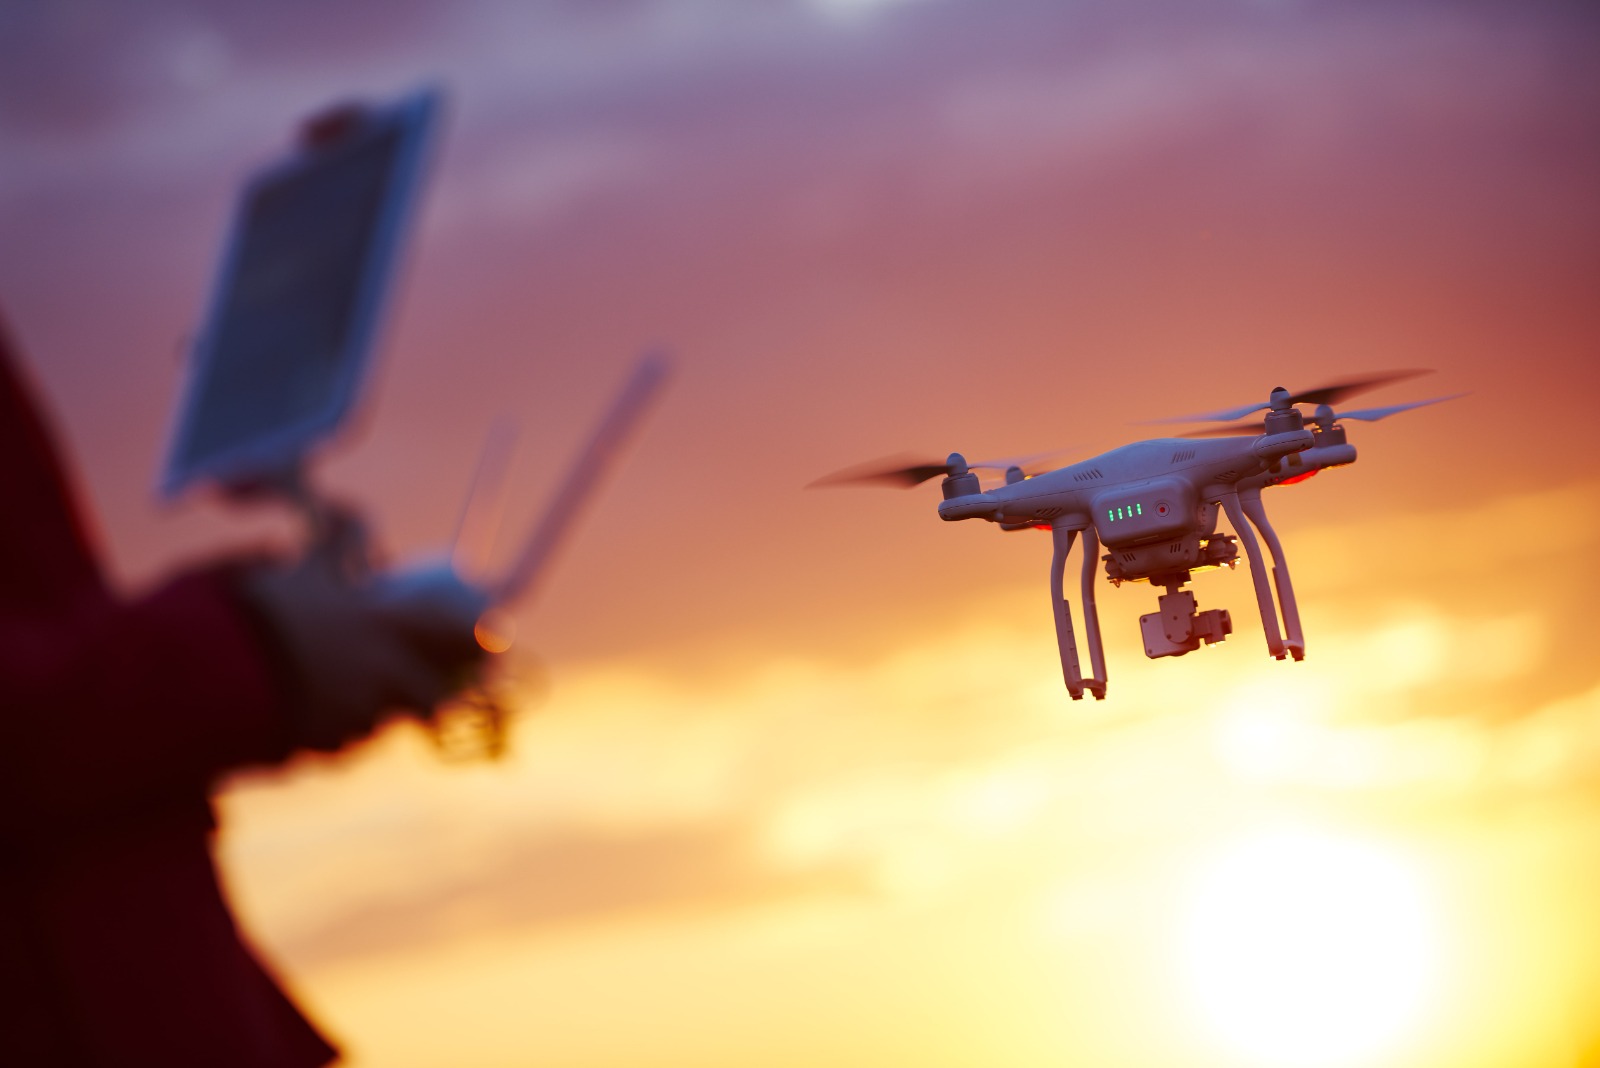     Les radars drones, la nouvelle arme contre l’insécurité routière

